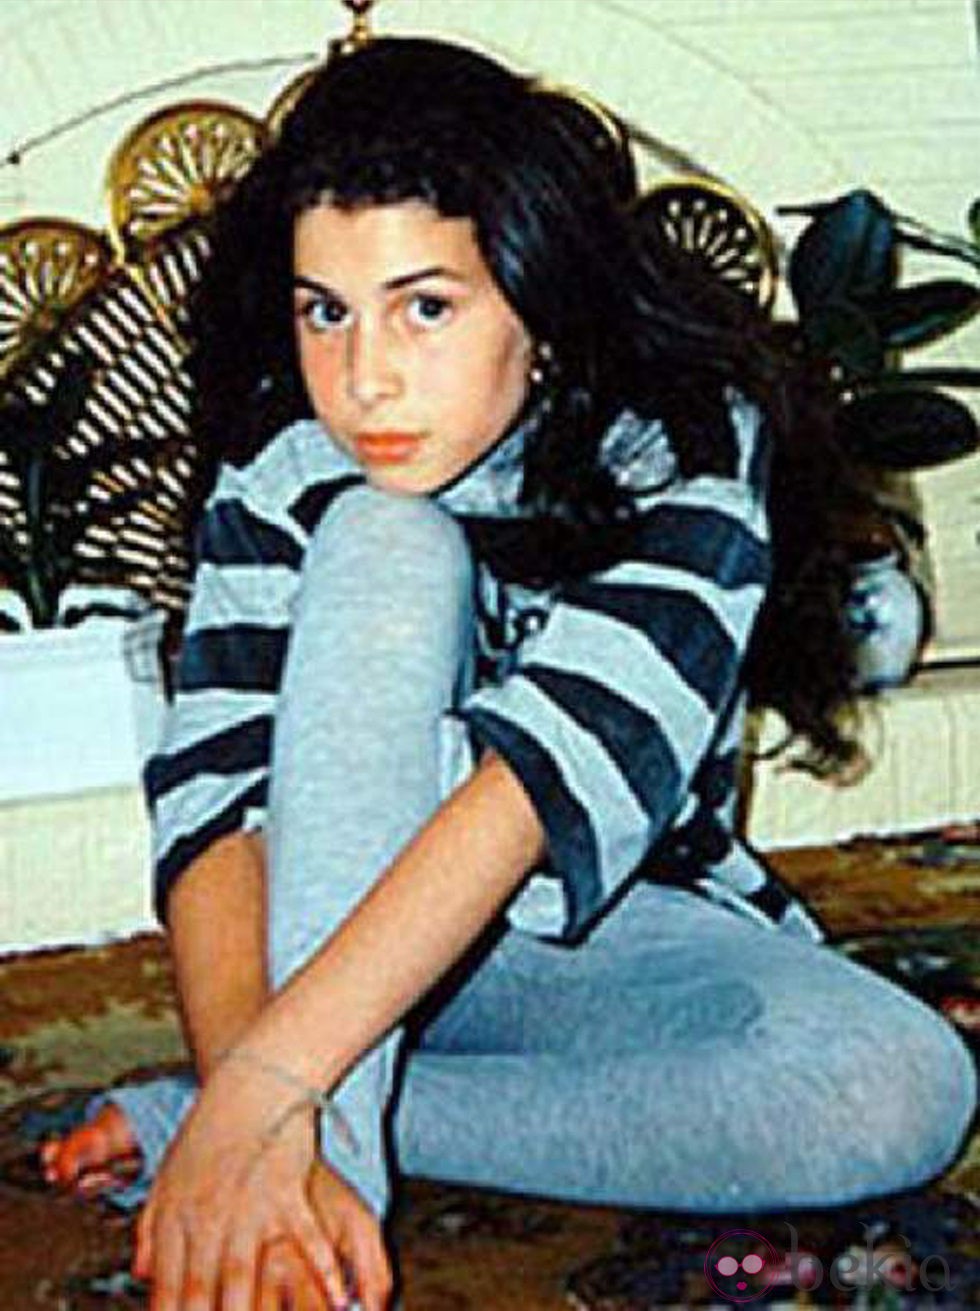 Una tímida adolescente llamada Amy Winehouse